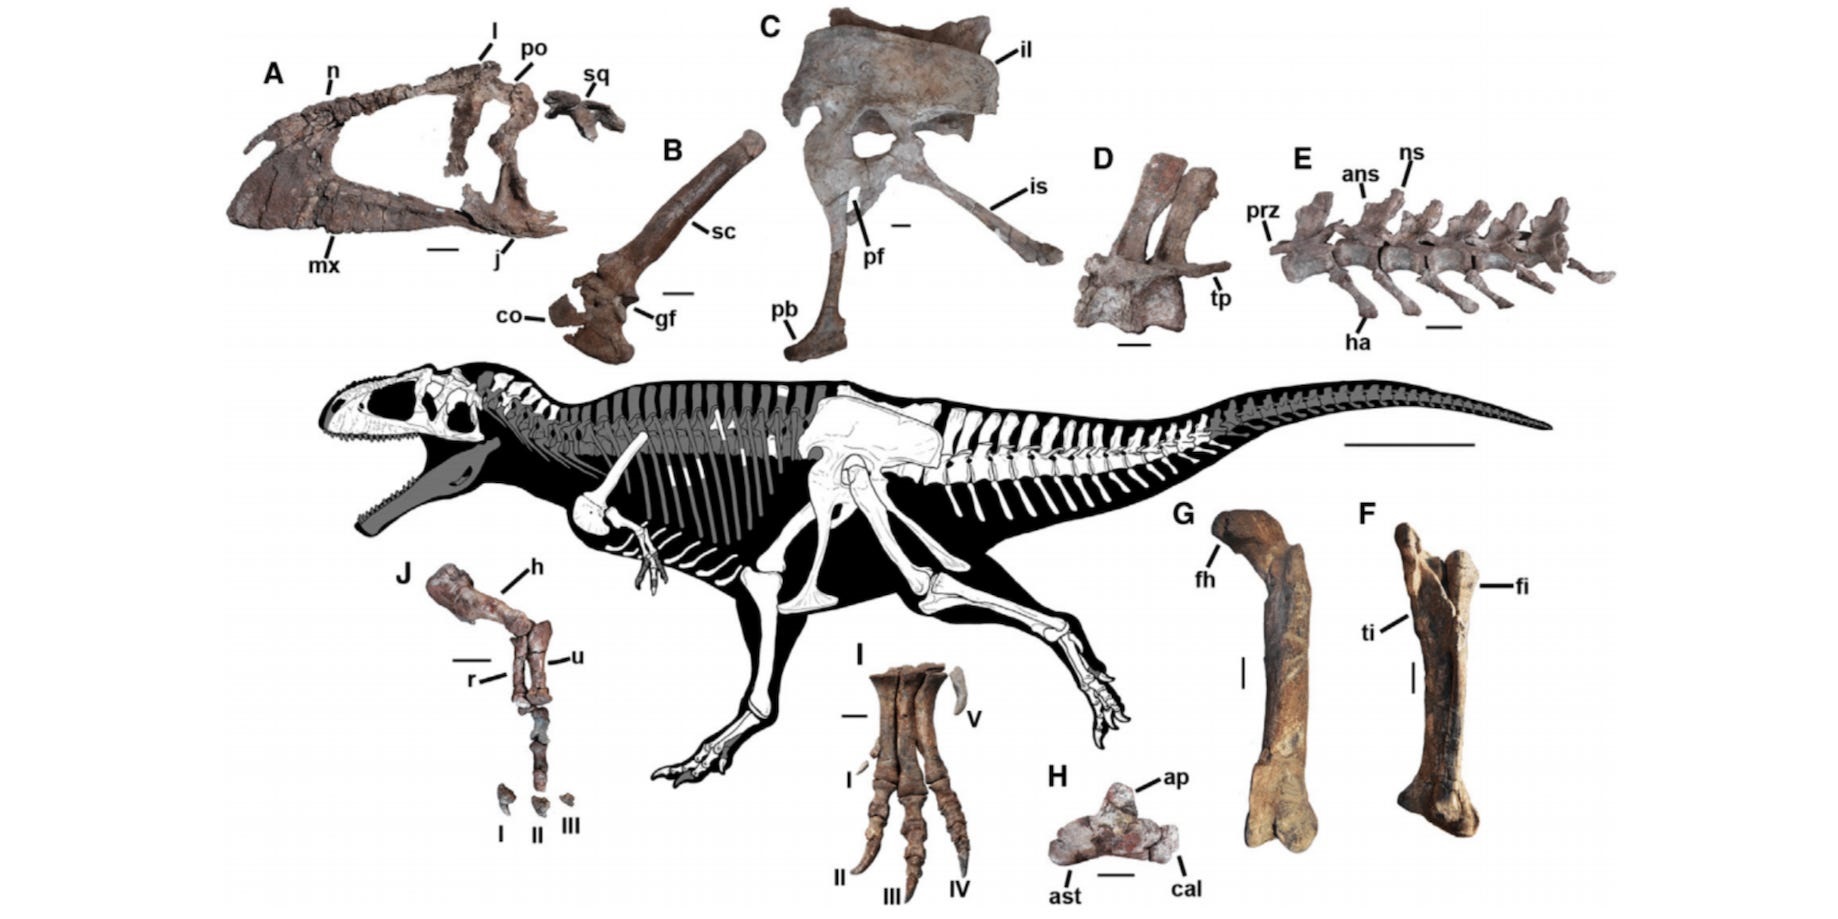 Bilim adamları, T. rex gibi küçük kolları olan devasa bir dinozor buldular ve bu, neden bu şekilde evrimleştiklerinin gizemini derinleştirdi